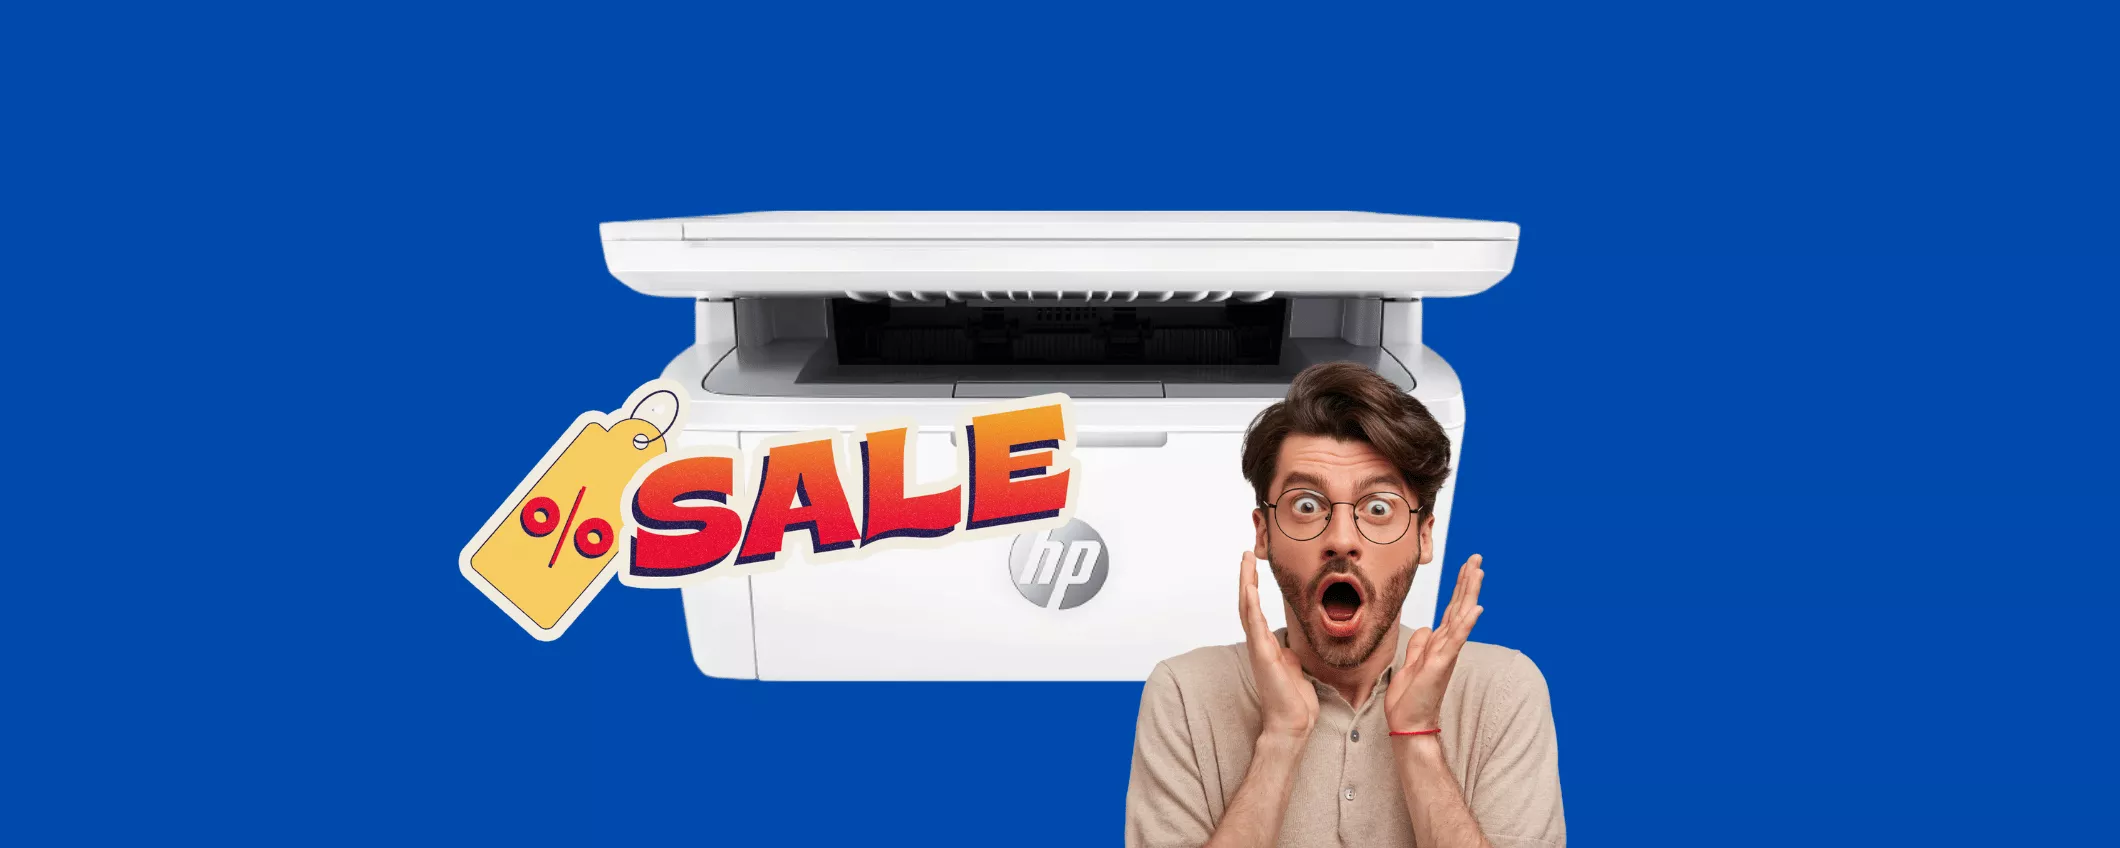 Stampante HP con sconto SHOCK del 51%: ultimissimi pezzi disponibili oggi